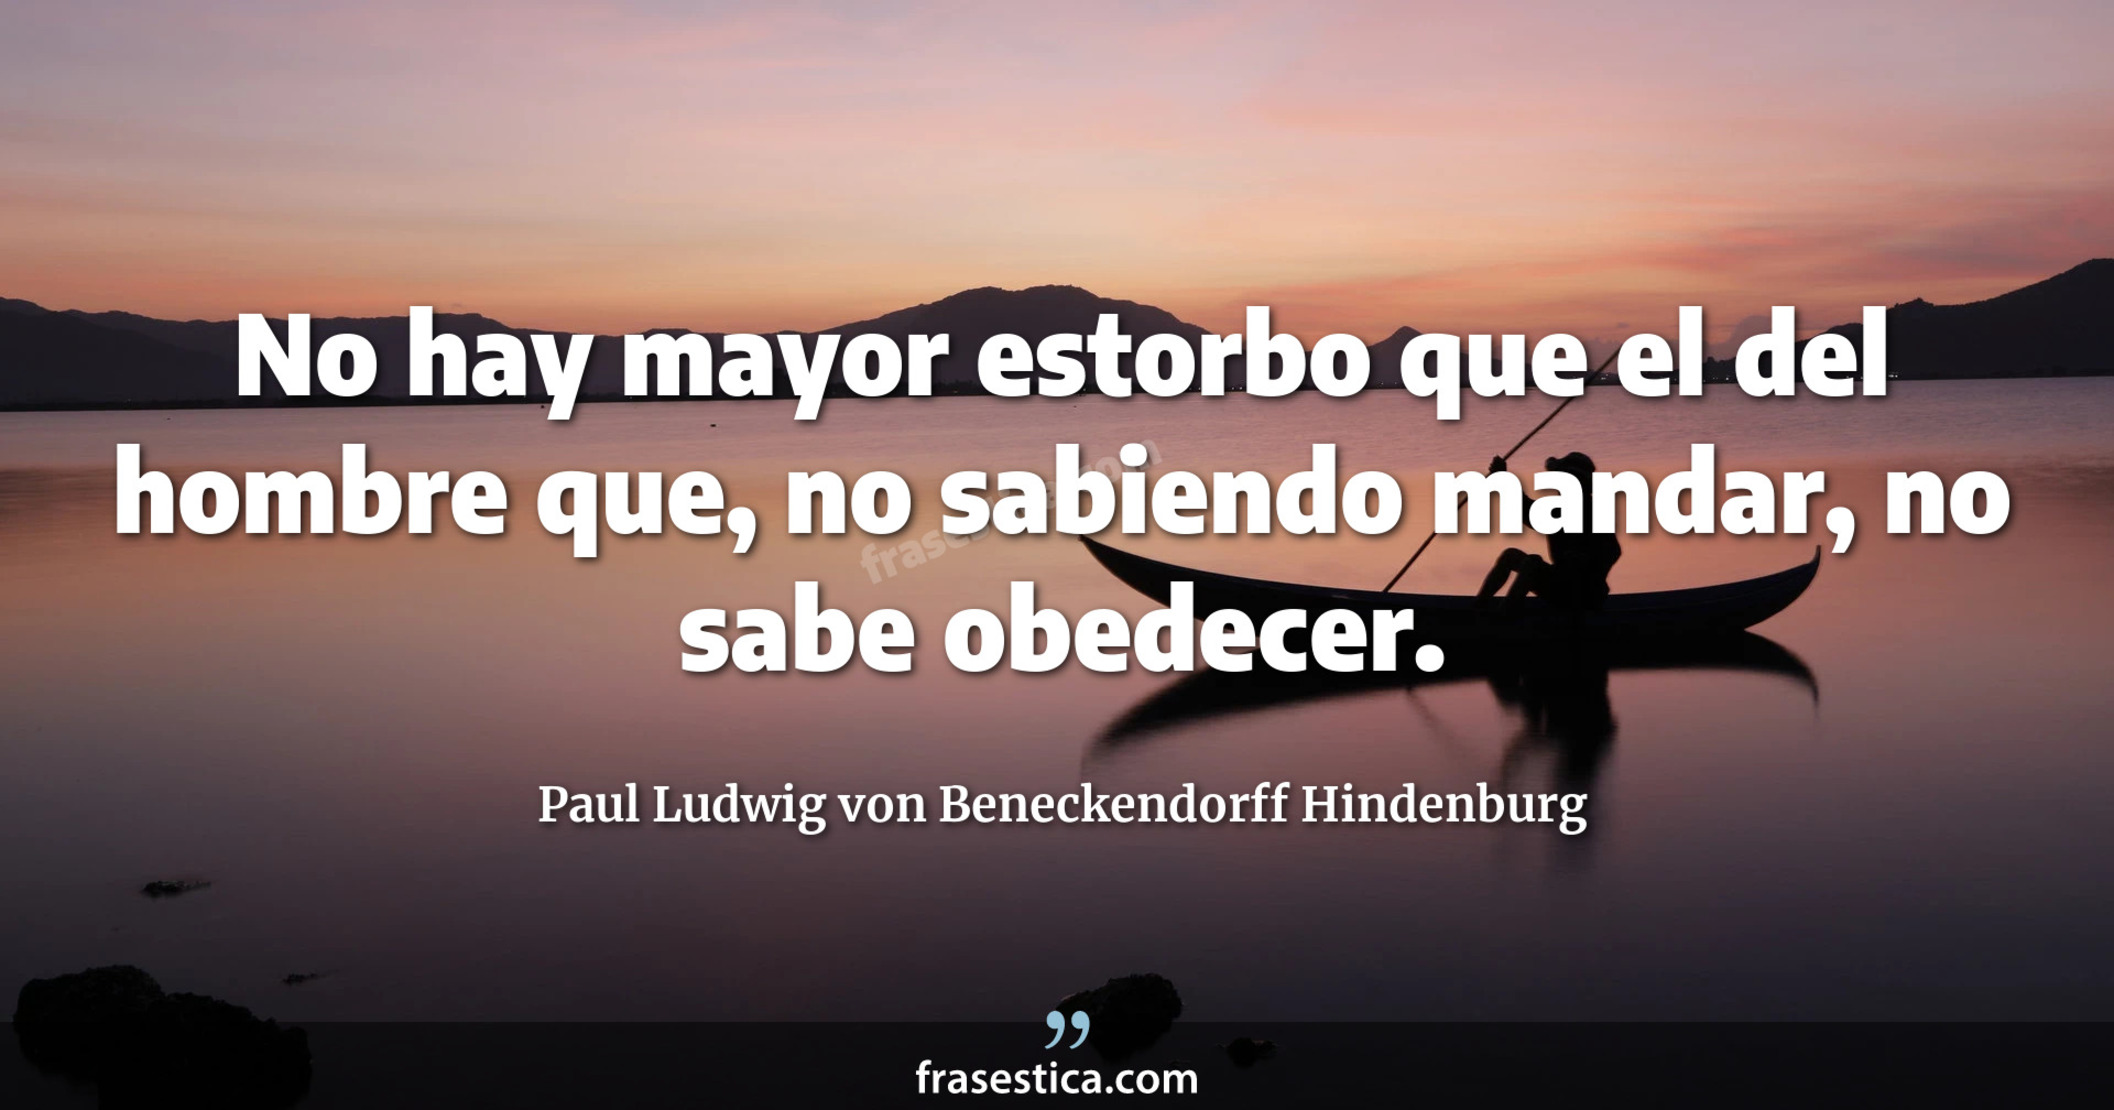 No hay mayor estorbo que el del hombre que, no sabiendo mandar, no sabe obedecer. - Paul Ludwig von Beneckendorff Hindenburg